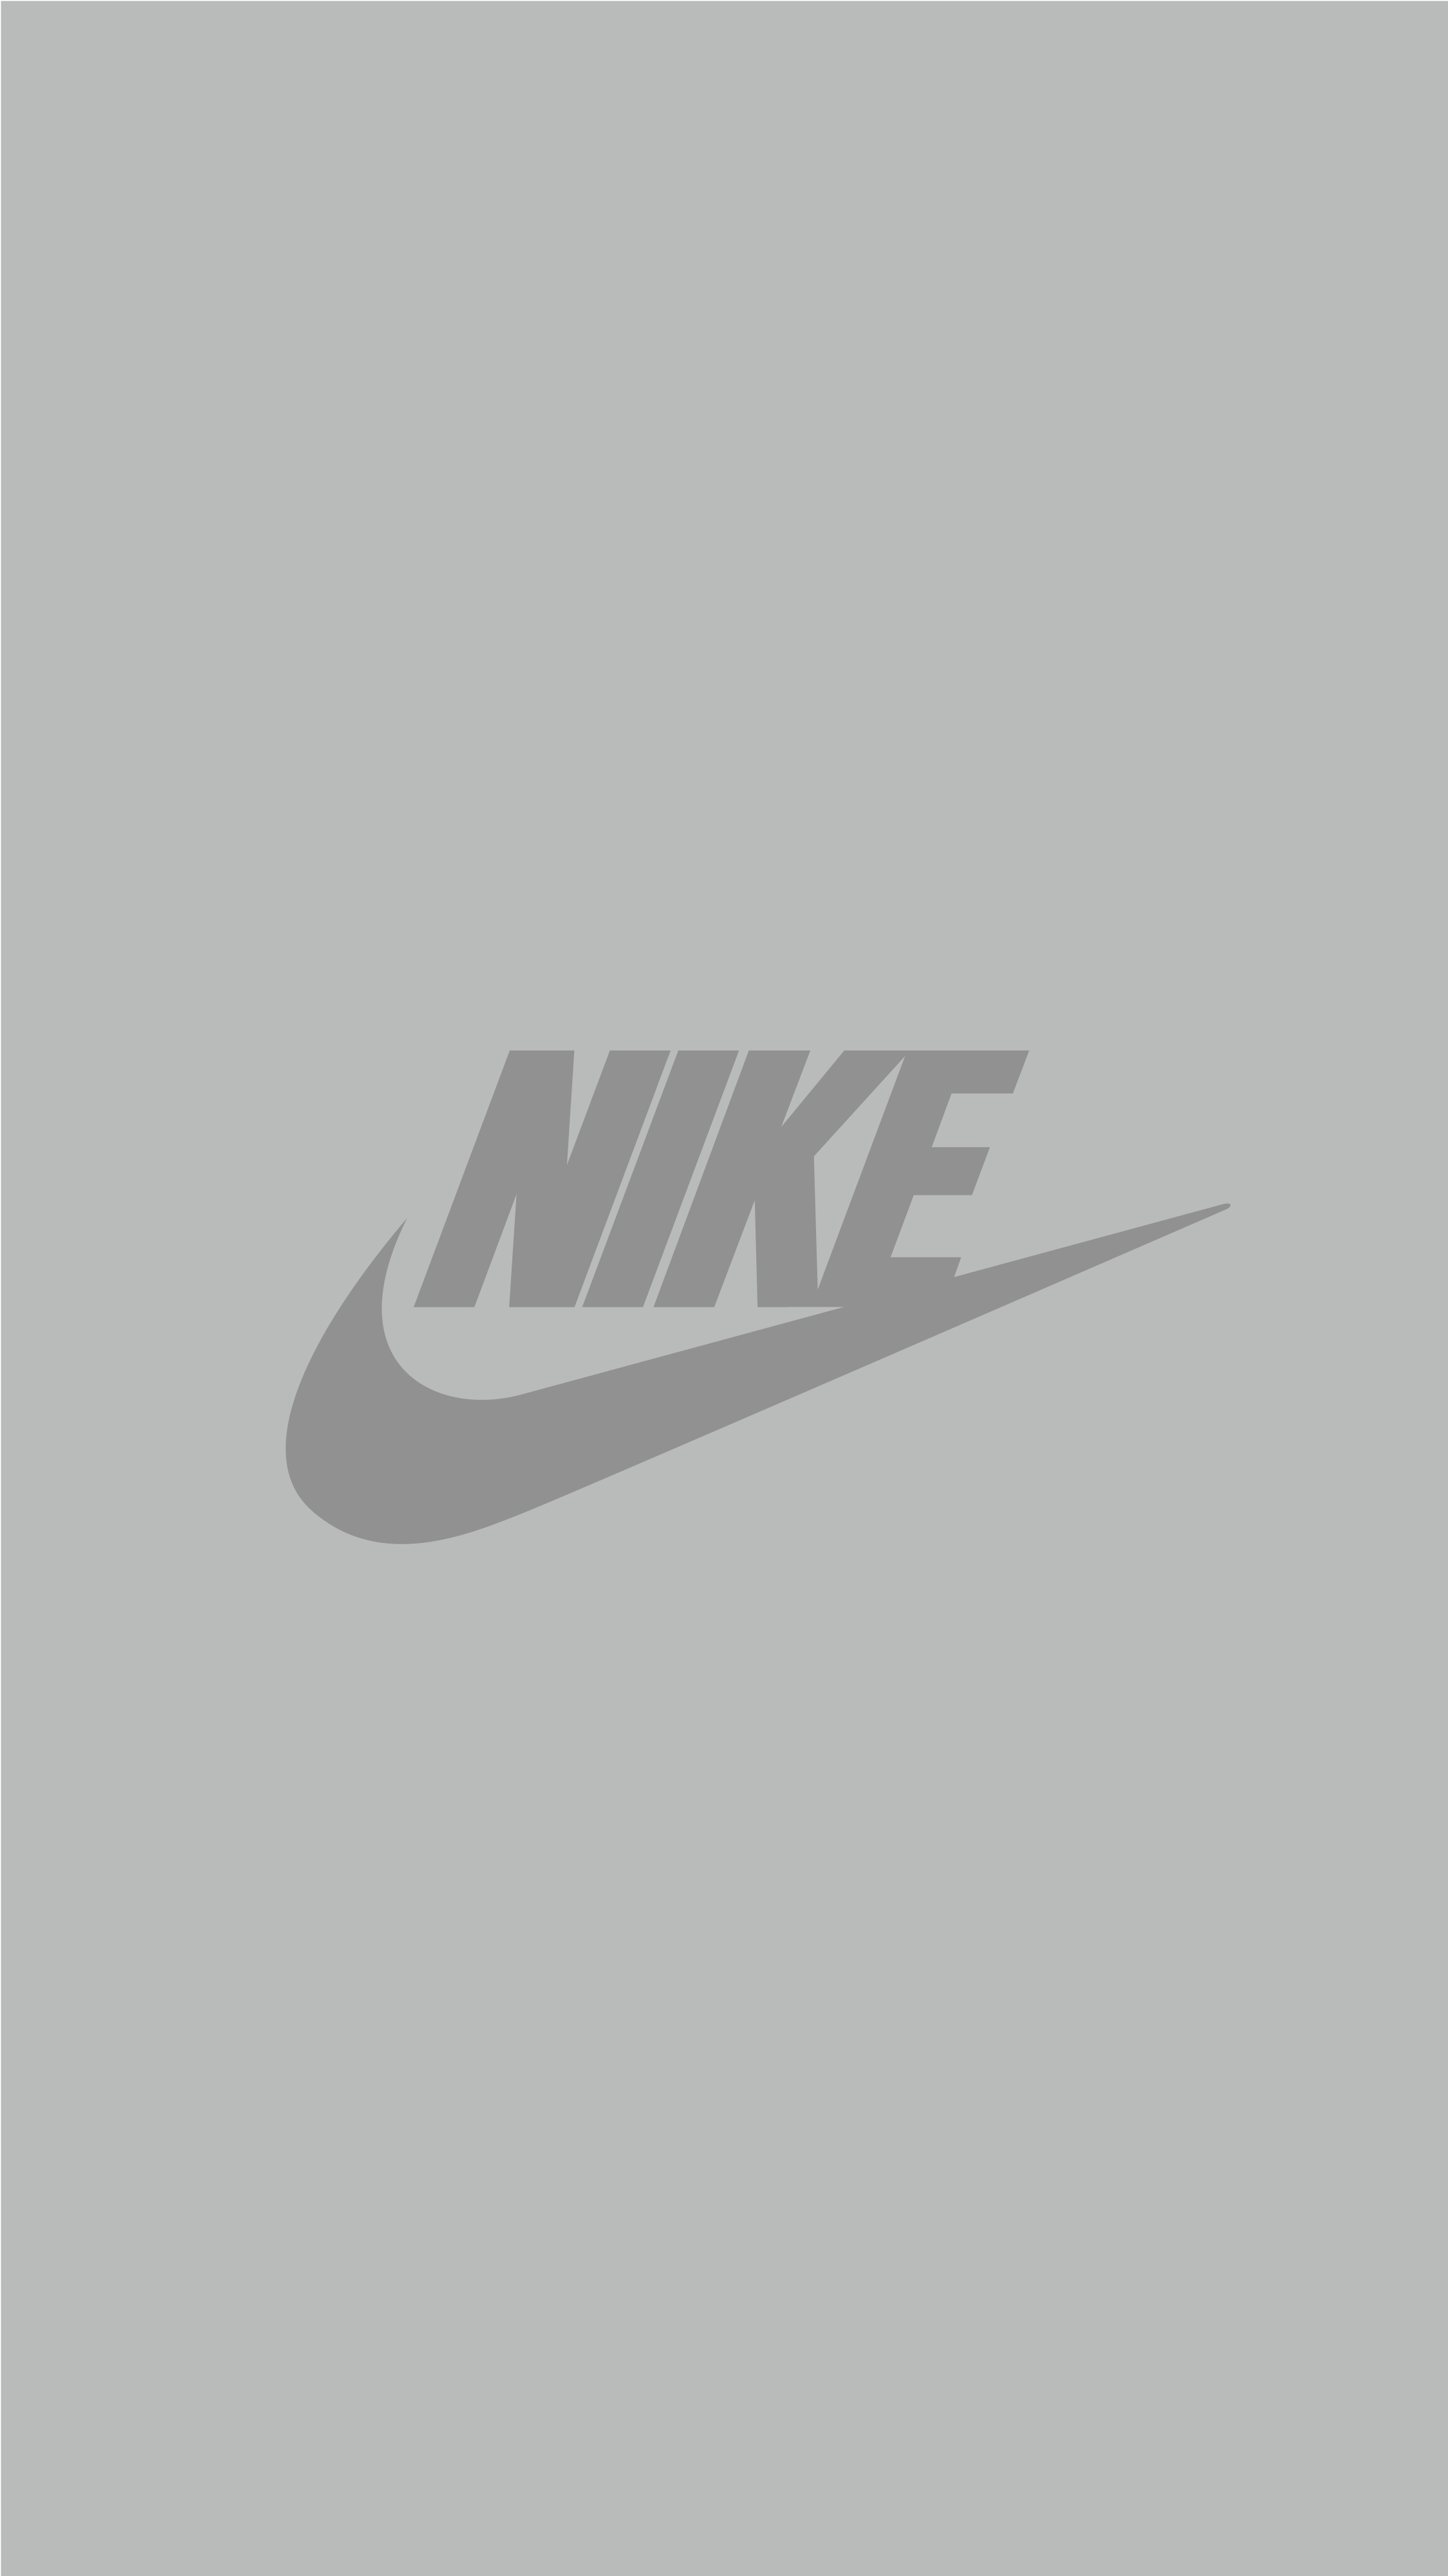 Nike wallpaper iPhone. Обои в стиле nike, Винтажные логотипы, Фоновые рисунки